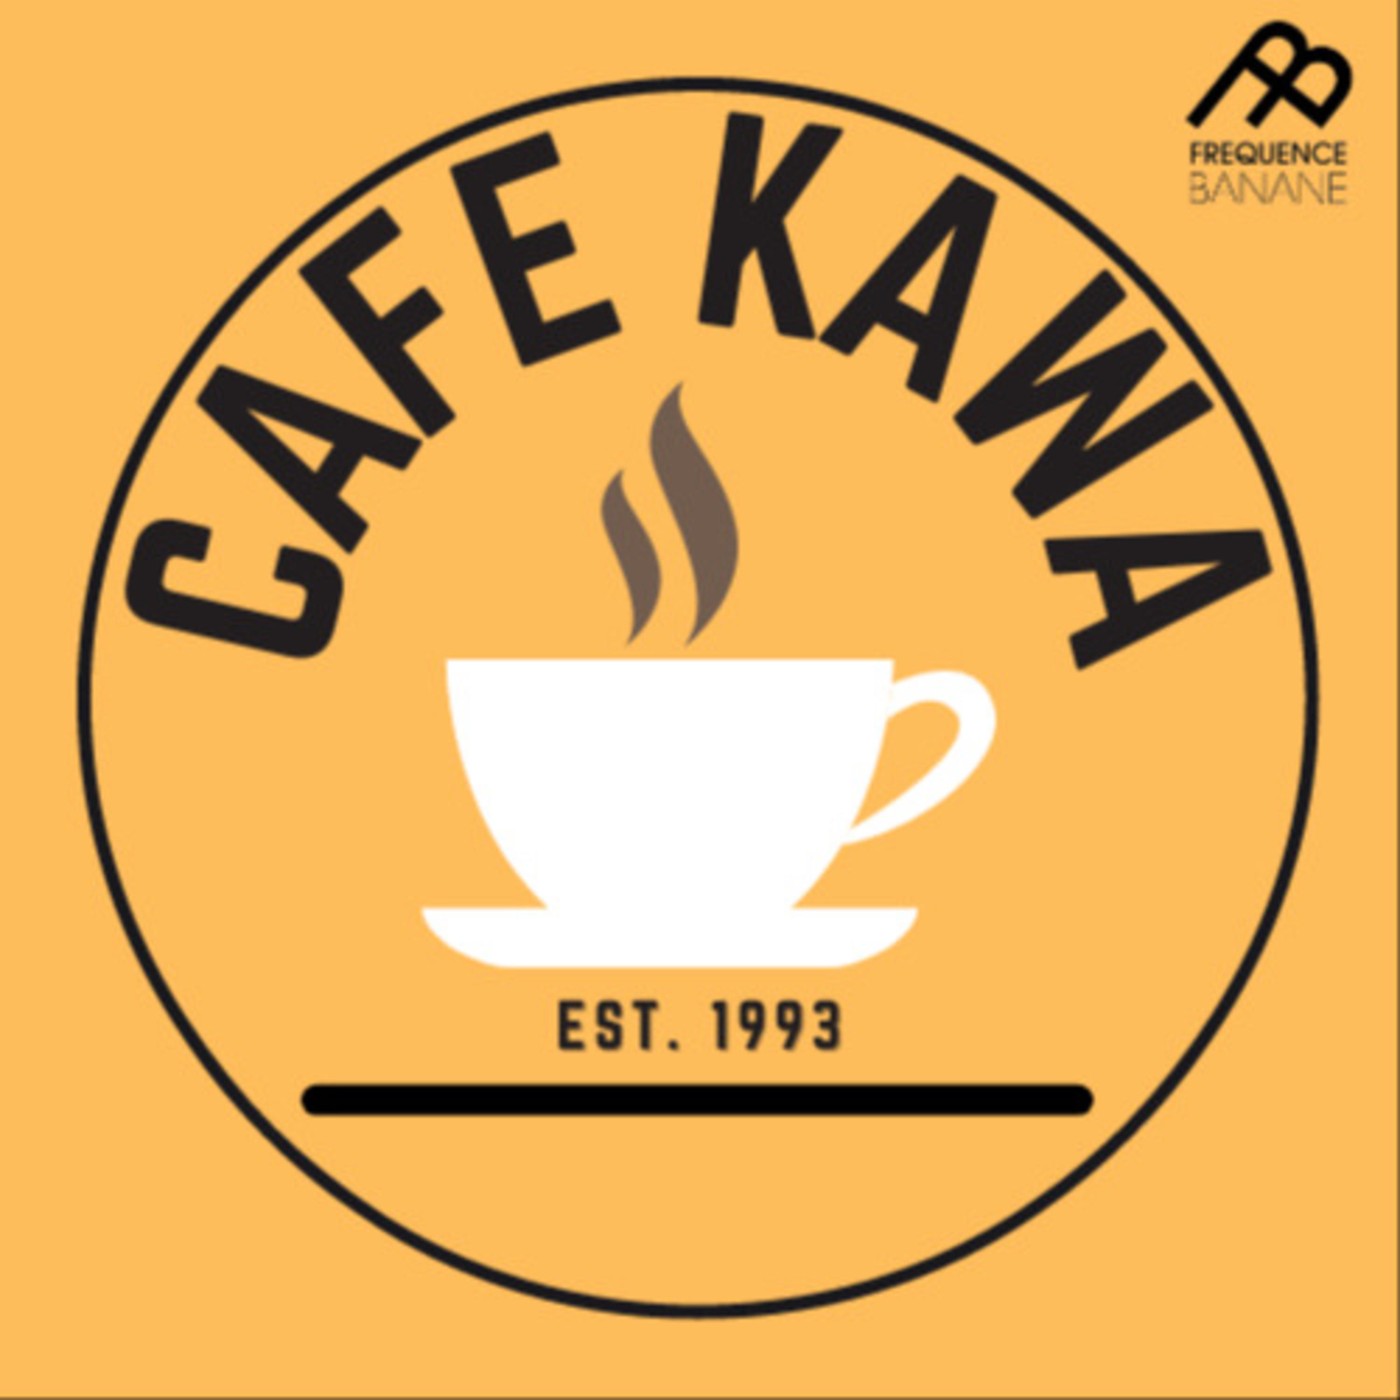 Le Voix Zinage - Café Kawa du 01.04.2021